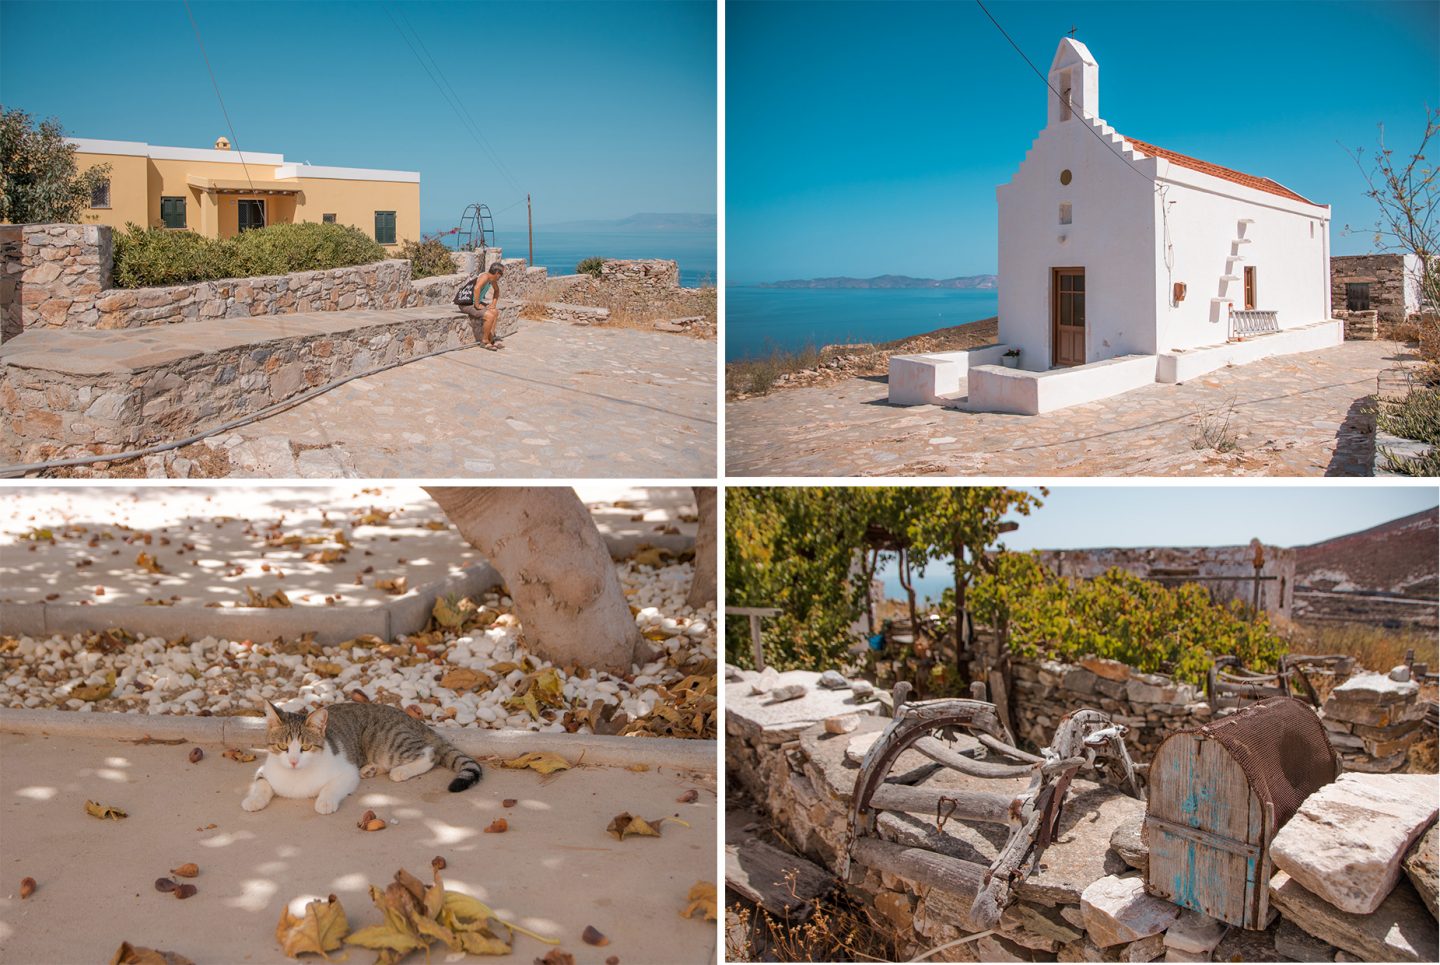 Geheimtipp - Dorf San Michalis auf Syros,. Die Insel hat viele entdeckenswerte Plätze und schöne Strände.